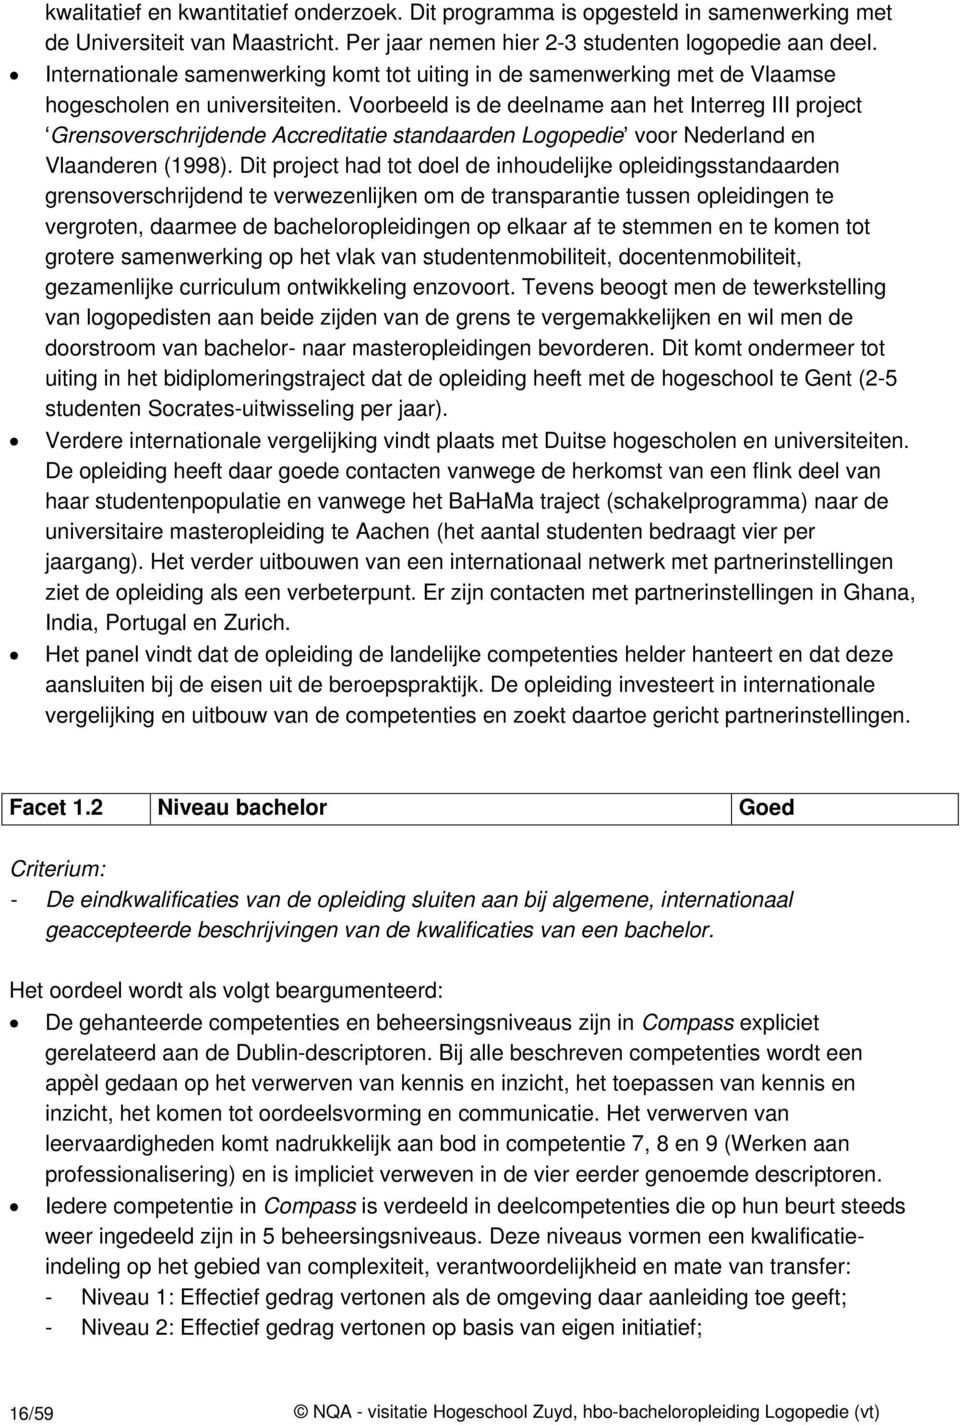 Voorbeeld is de deelname aan het Interreg III project Grensoverschrijdende Accreditatie standaarden Logopedie voor Nederland en Vlaanderen (1998).